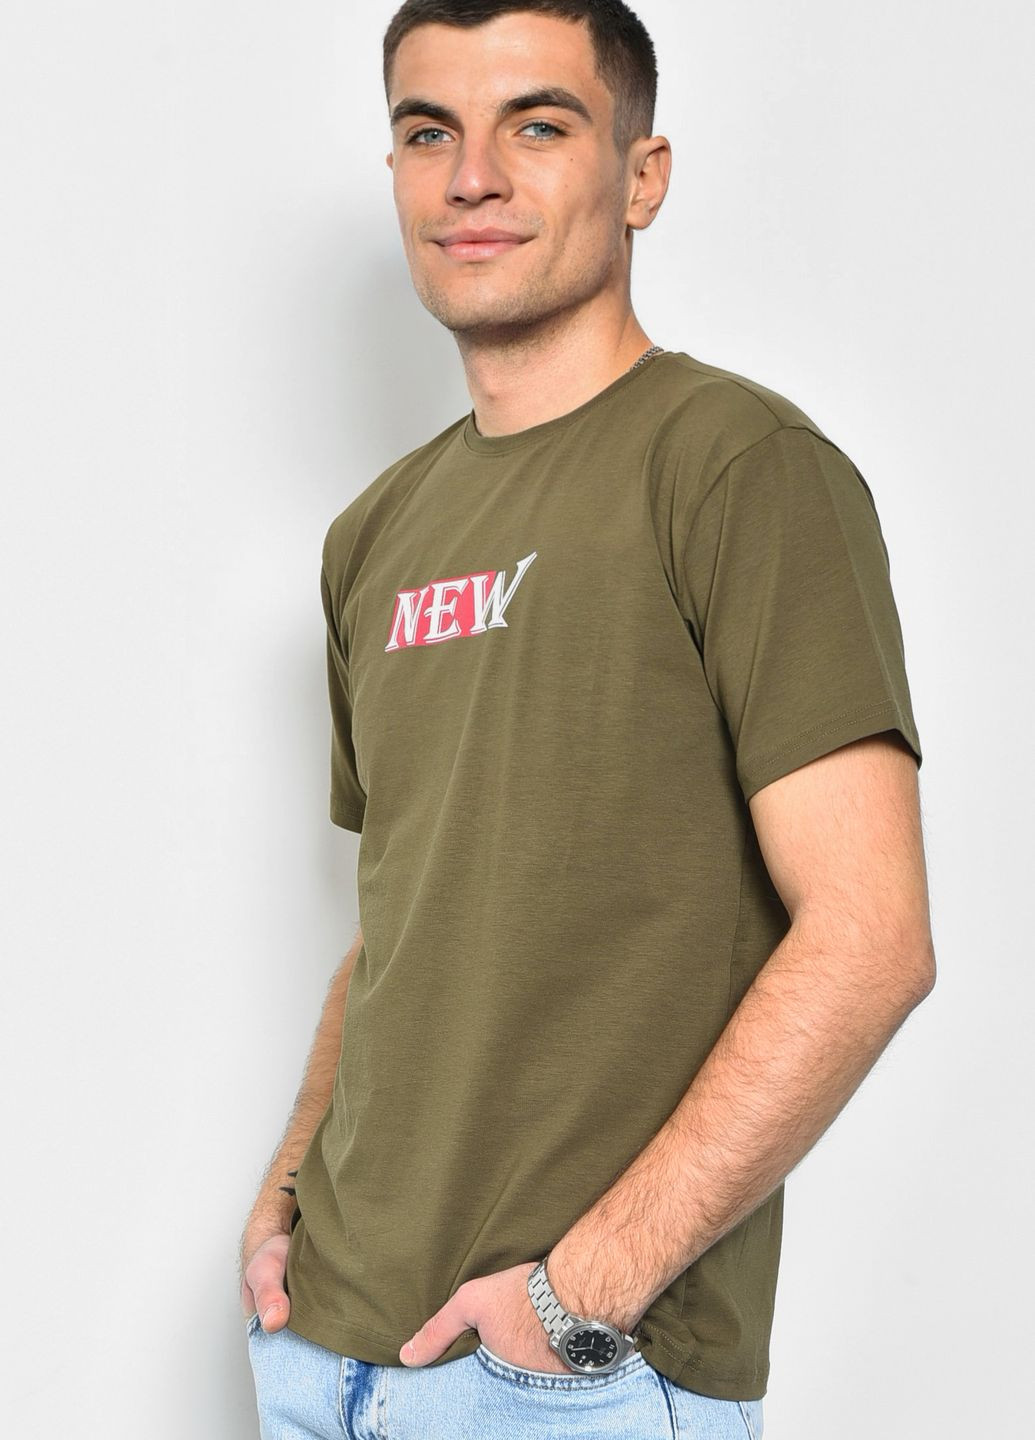 Хакі (оливкова) футболка чоловіча кольору хакі Let's Shop